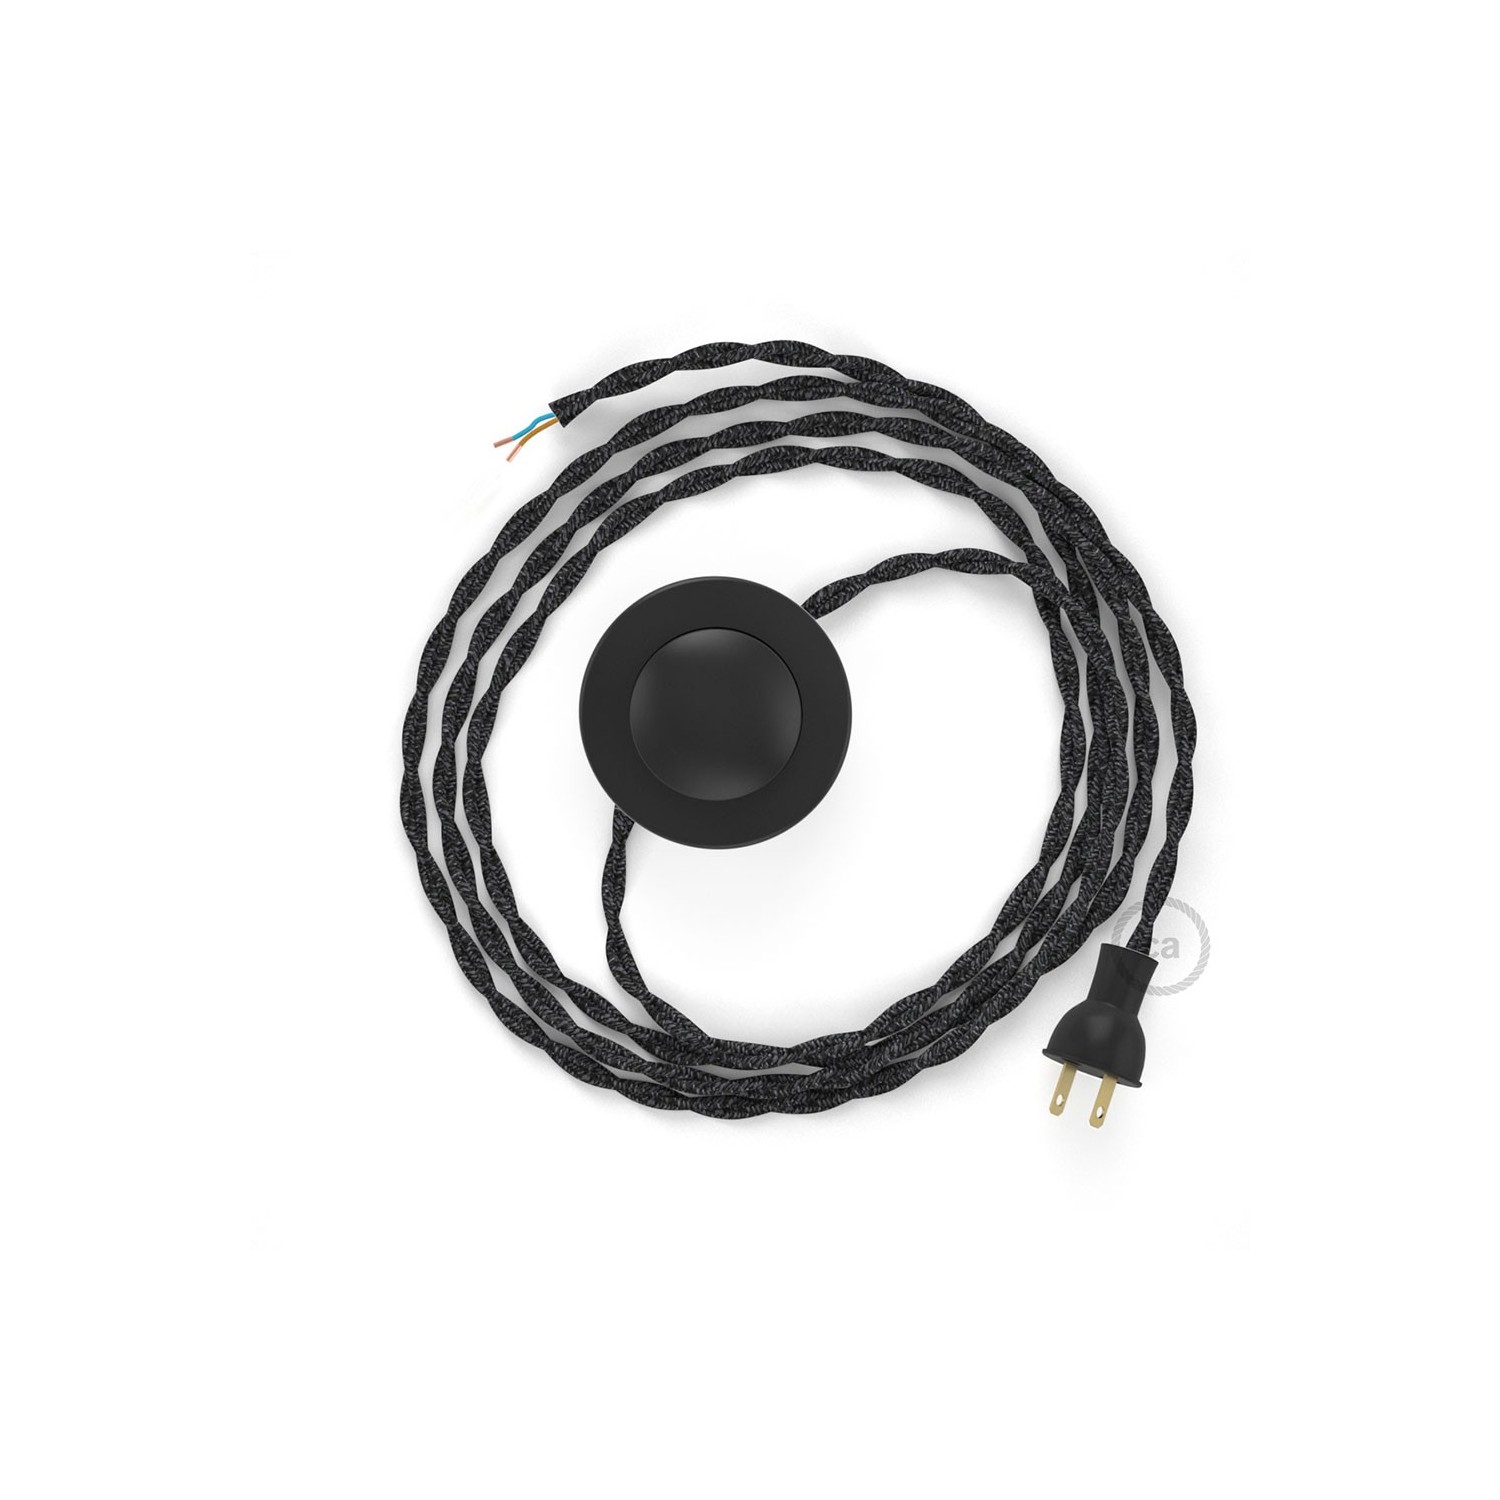 Cableado para lámpara de piso, cable TN03 Lino Natural Antracita 3 m. Elige tu el color de la clavija y del interruptor!